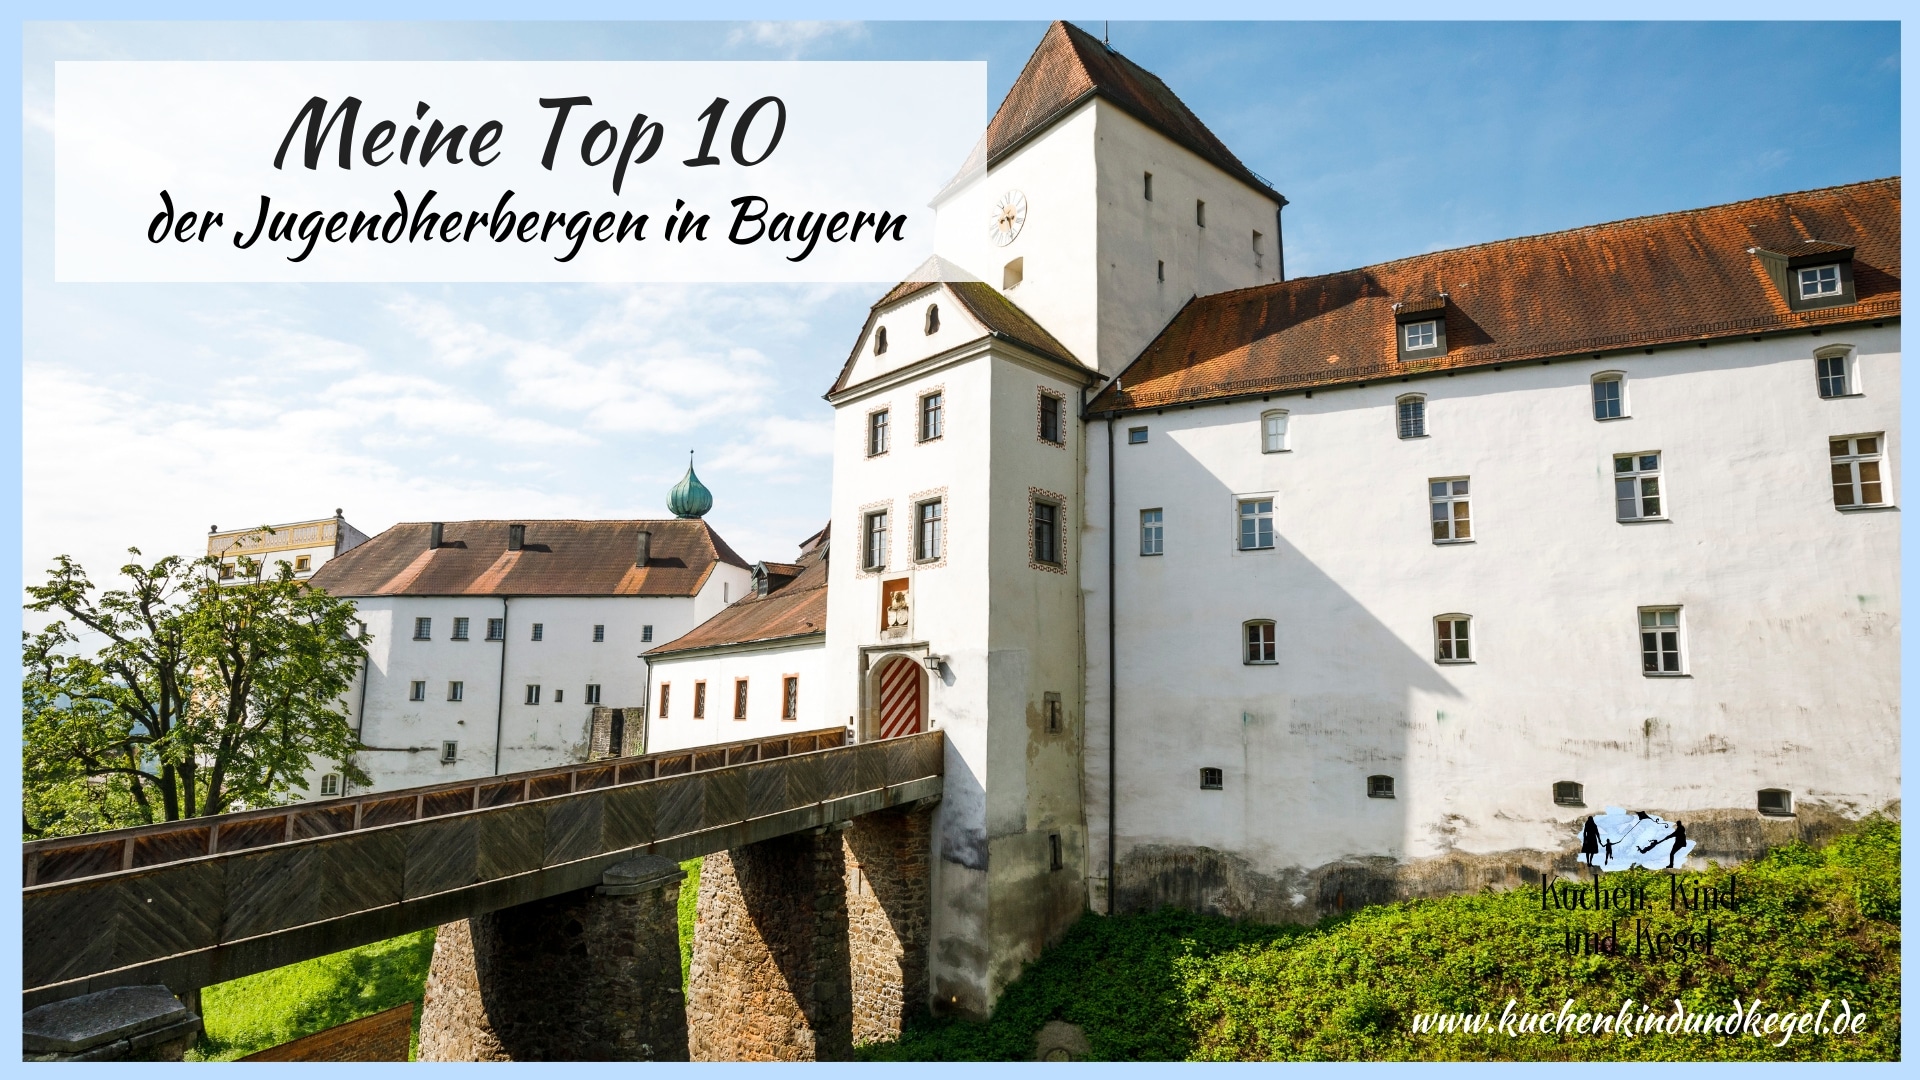 Reisen mit Kindern – meine Top 10 der DJH-Jugendherbergen in Bayern